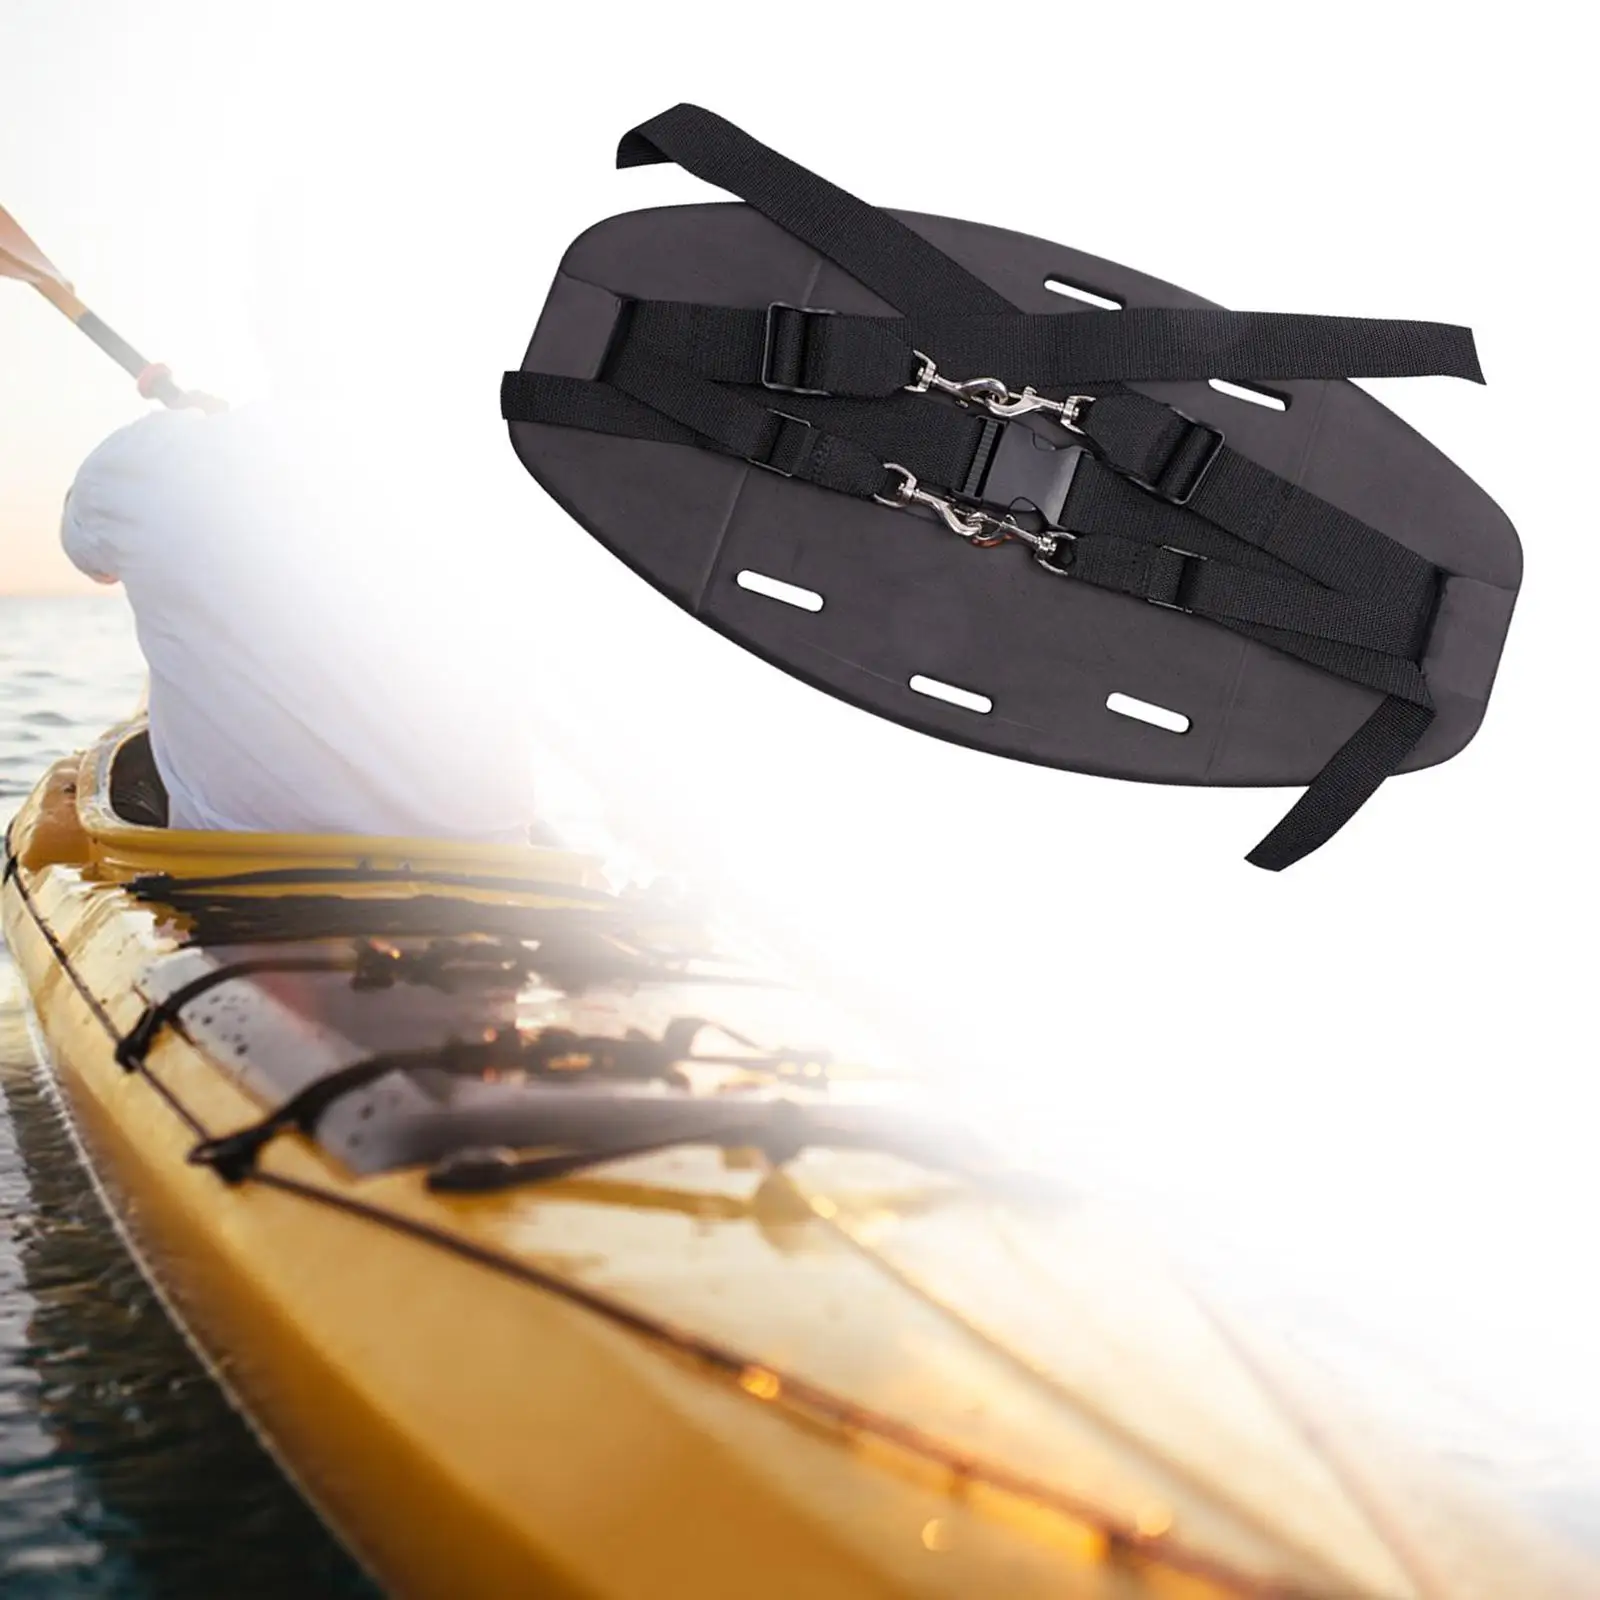 Kayak Backrest Replacement Cushion Black Comfortable EVA Adjustable Kayak band